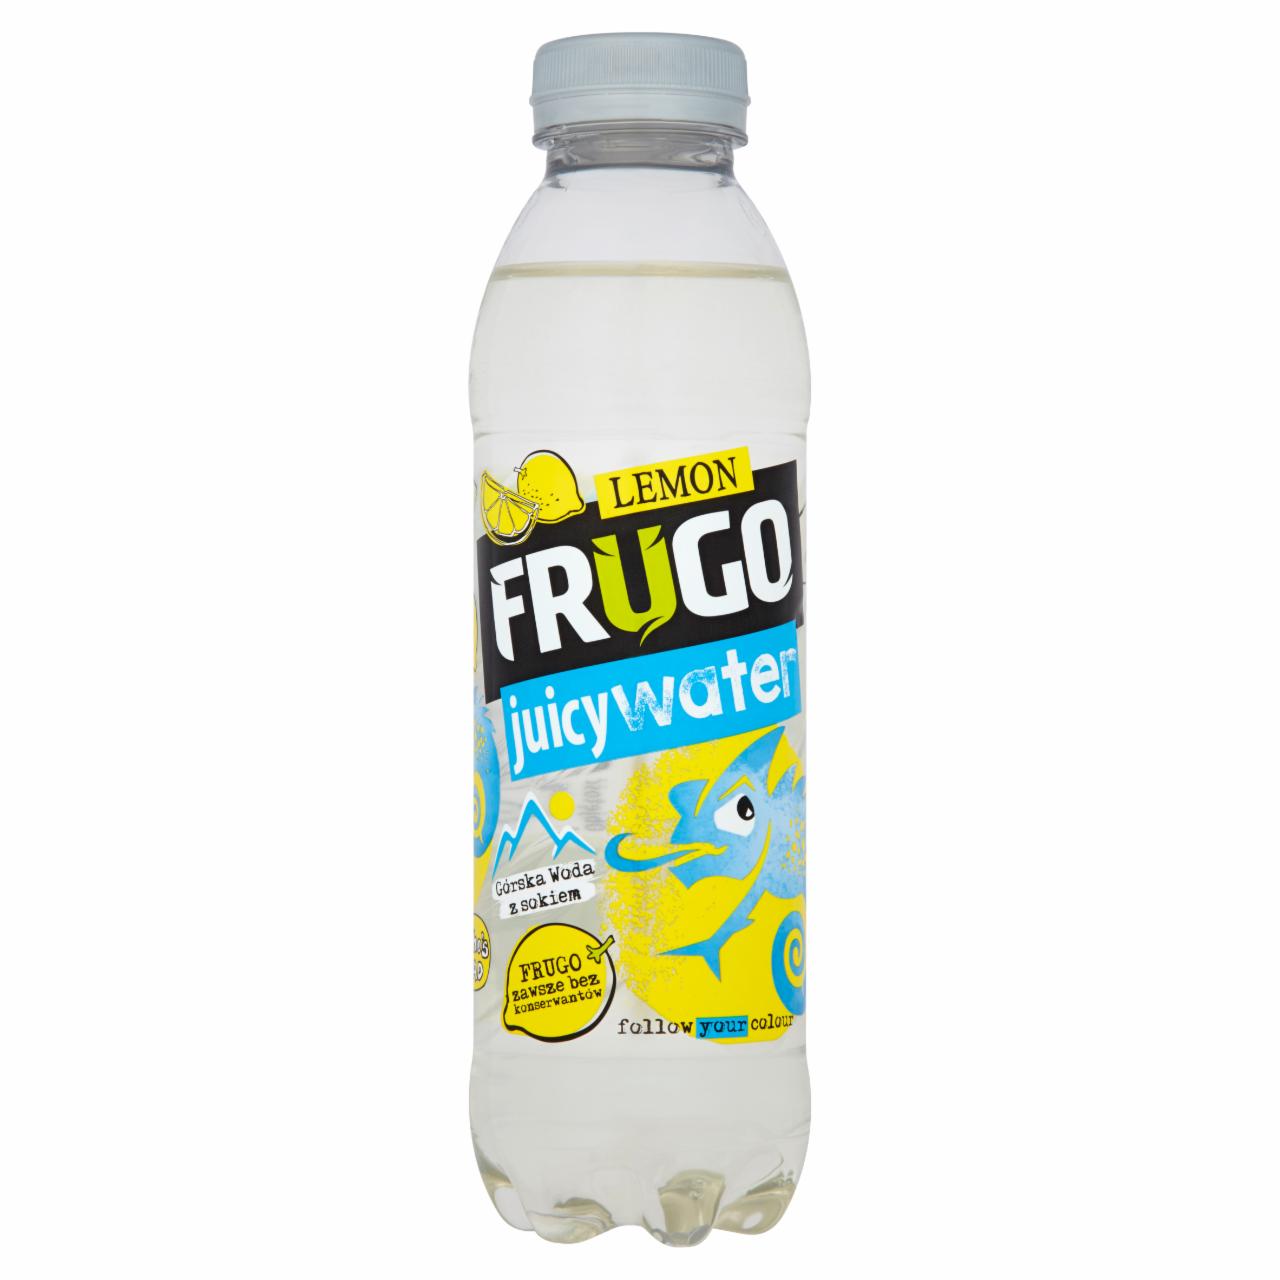 Zdjęcia - Frugo Juicy Water Lemon Górska woda z sokiem 500 ml